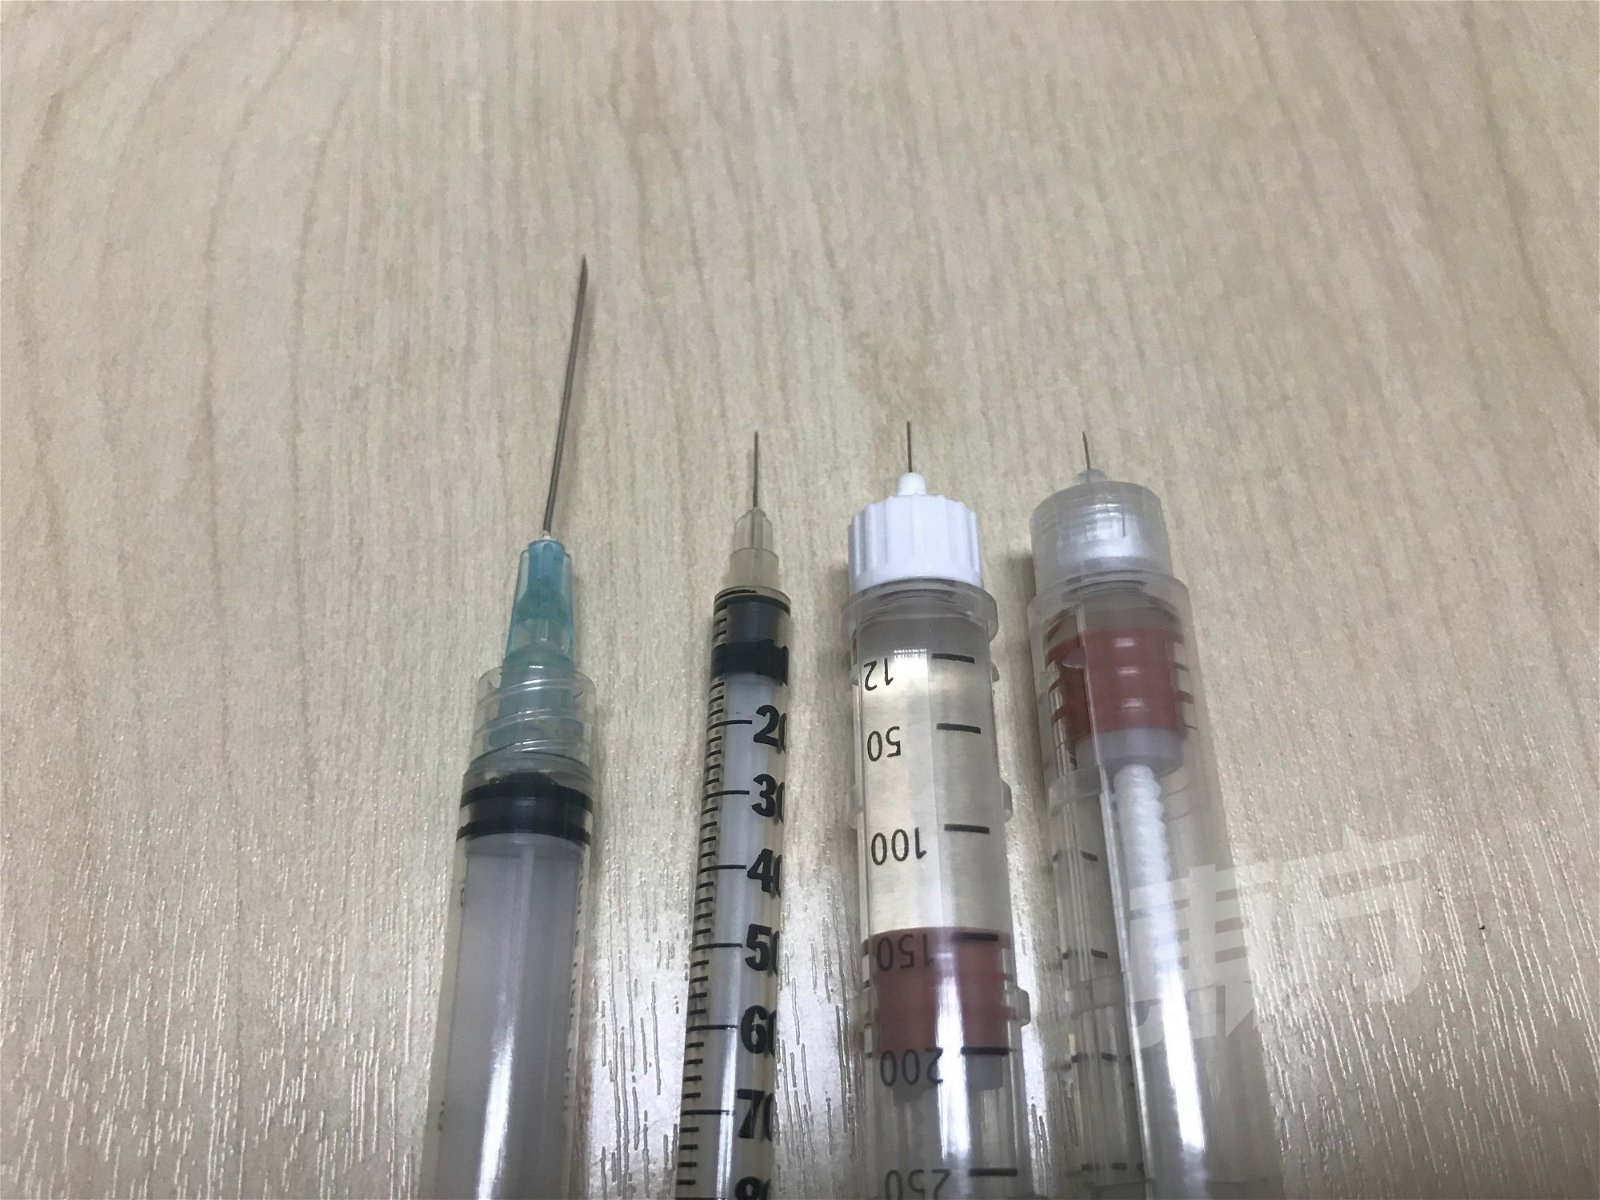 左起为普通针筒、传统胰岛素注射器、现代4公厘至6公厘胰岛素注射器。